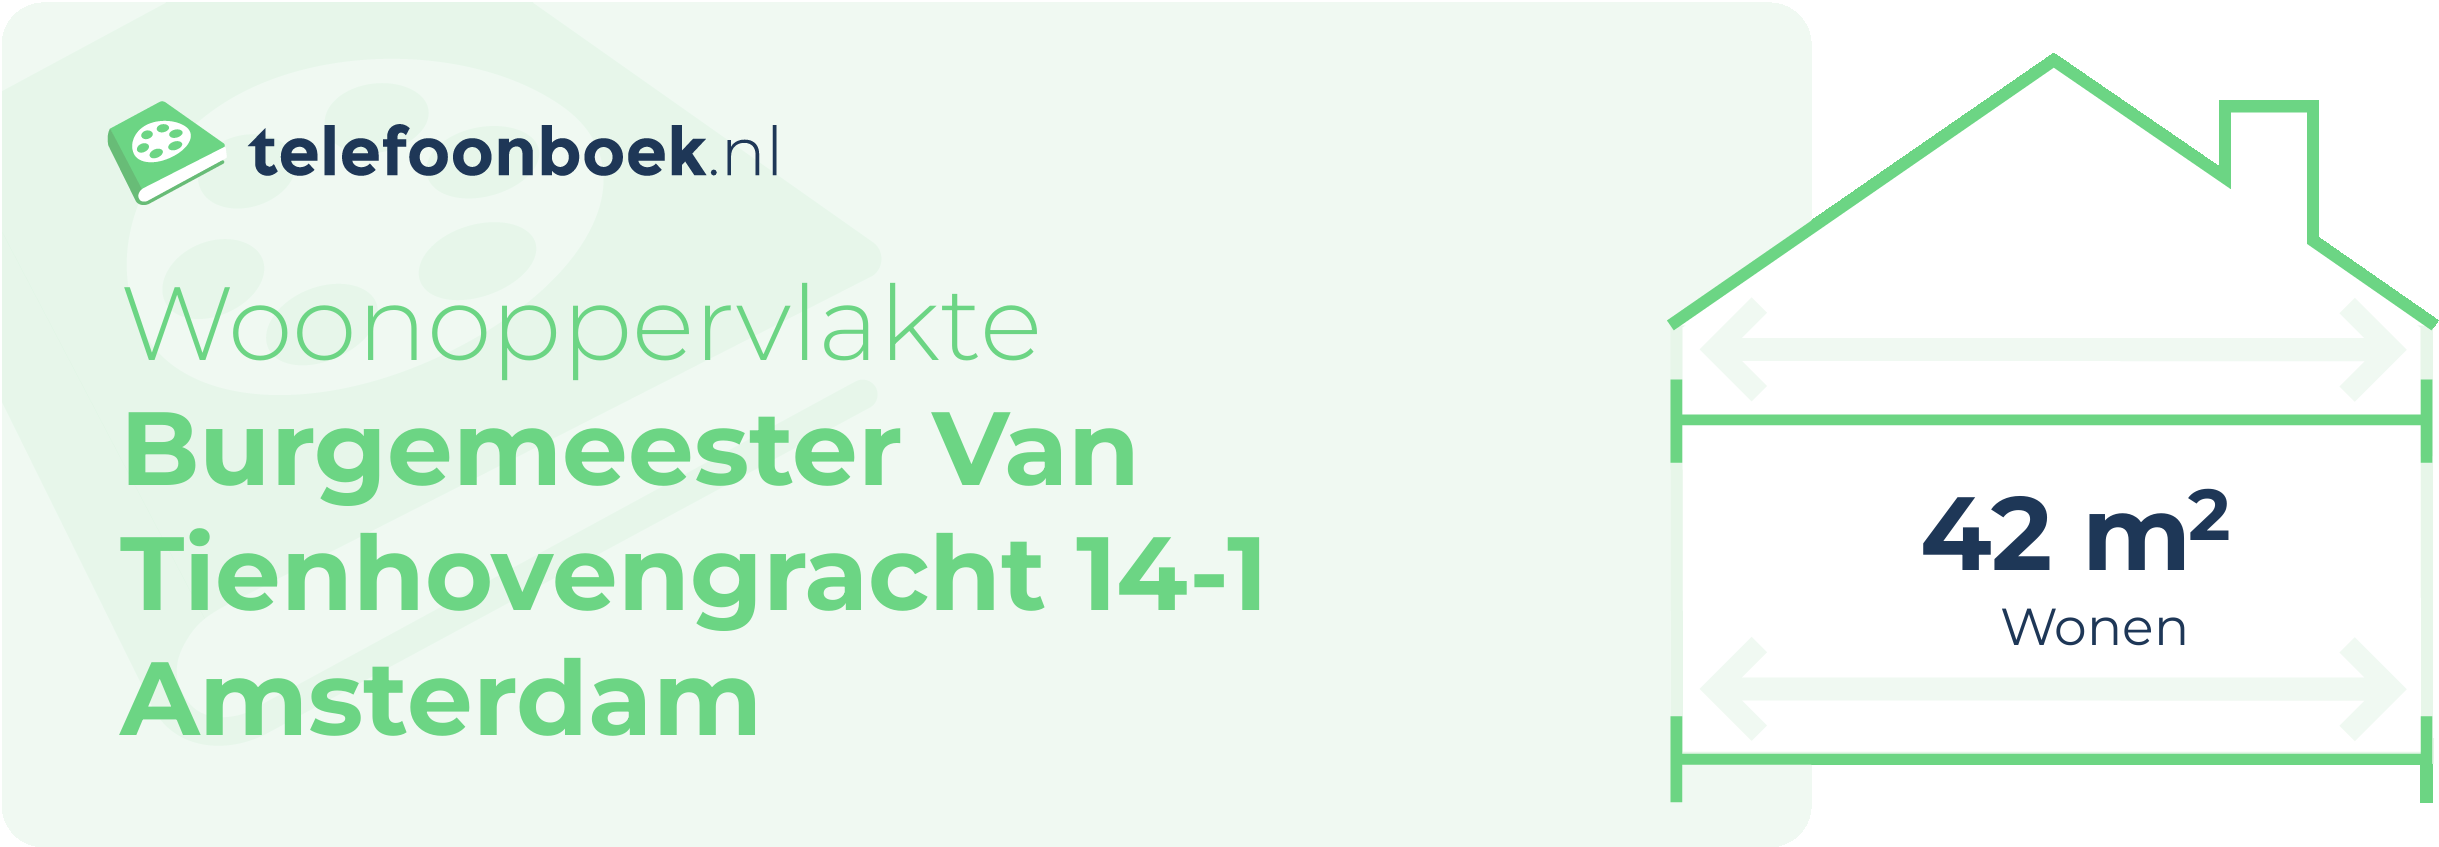 Woonoppervlakte Burgemeester Van Tienhovengracht 14-1 Amsterdam